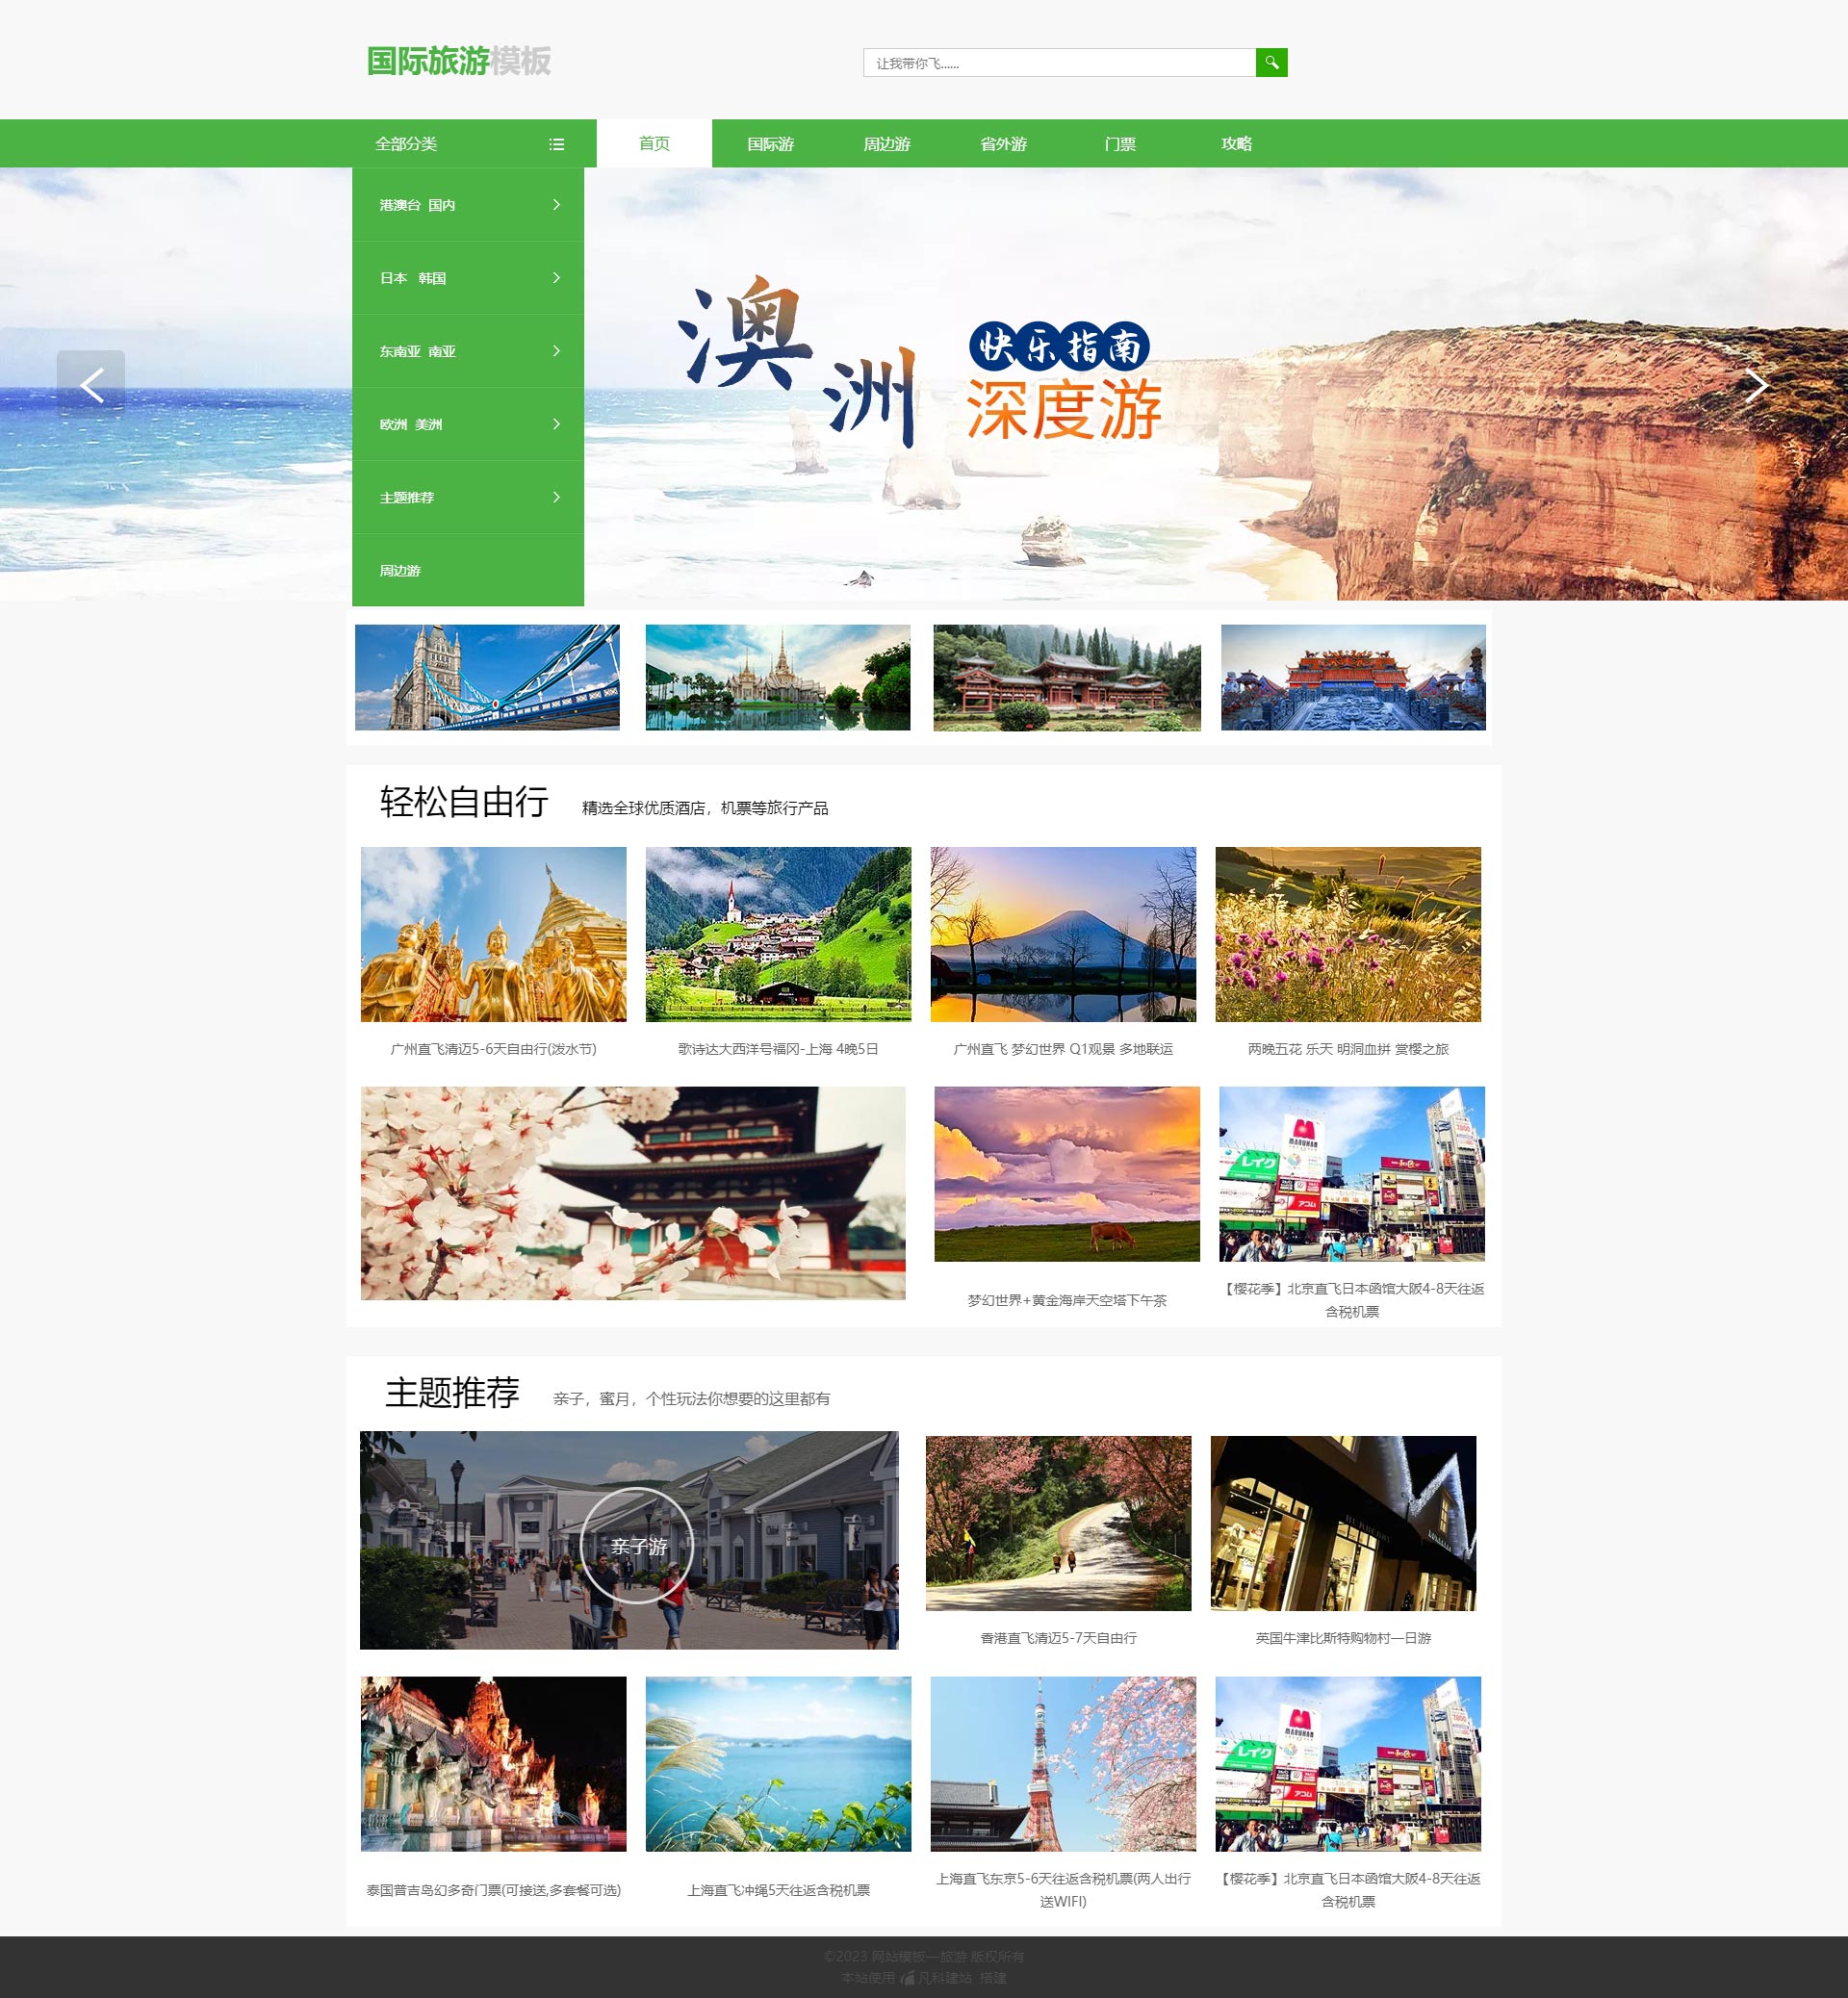 原创境外深度旅游免费网站模板